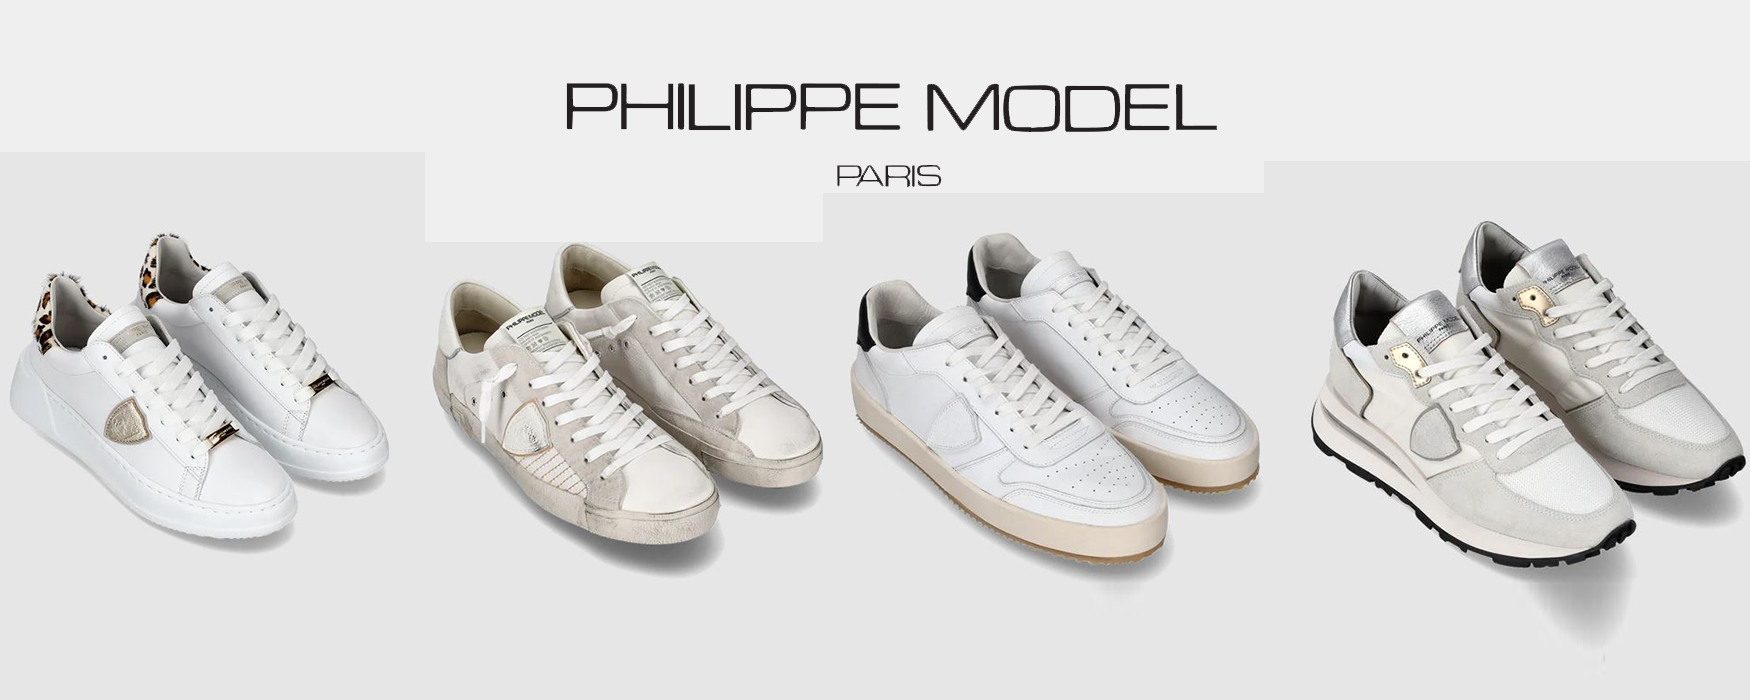 Sneakers philippe model in tutti i modelli, temple , paris, tropez , lyon ecc ecculimisimi arrivi e scontate ..philippe model